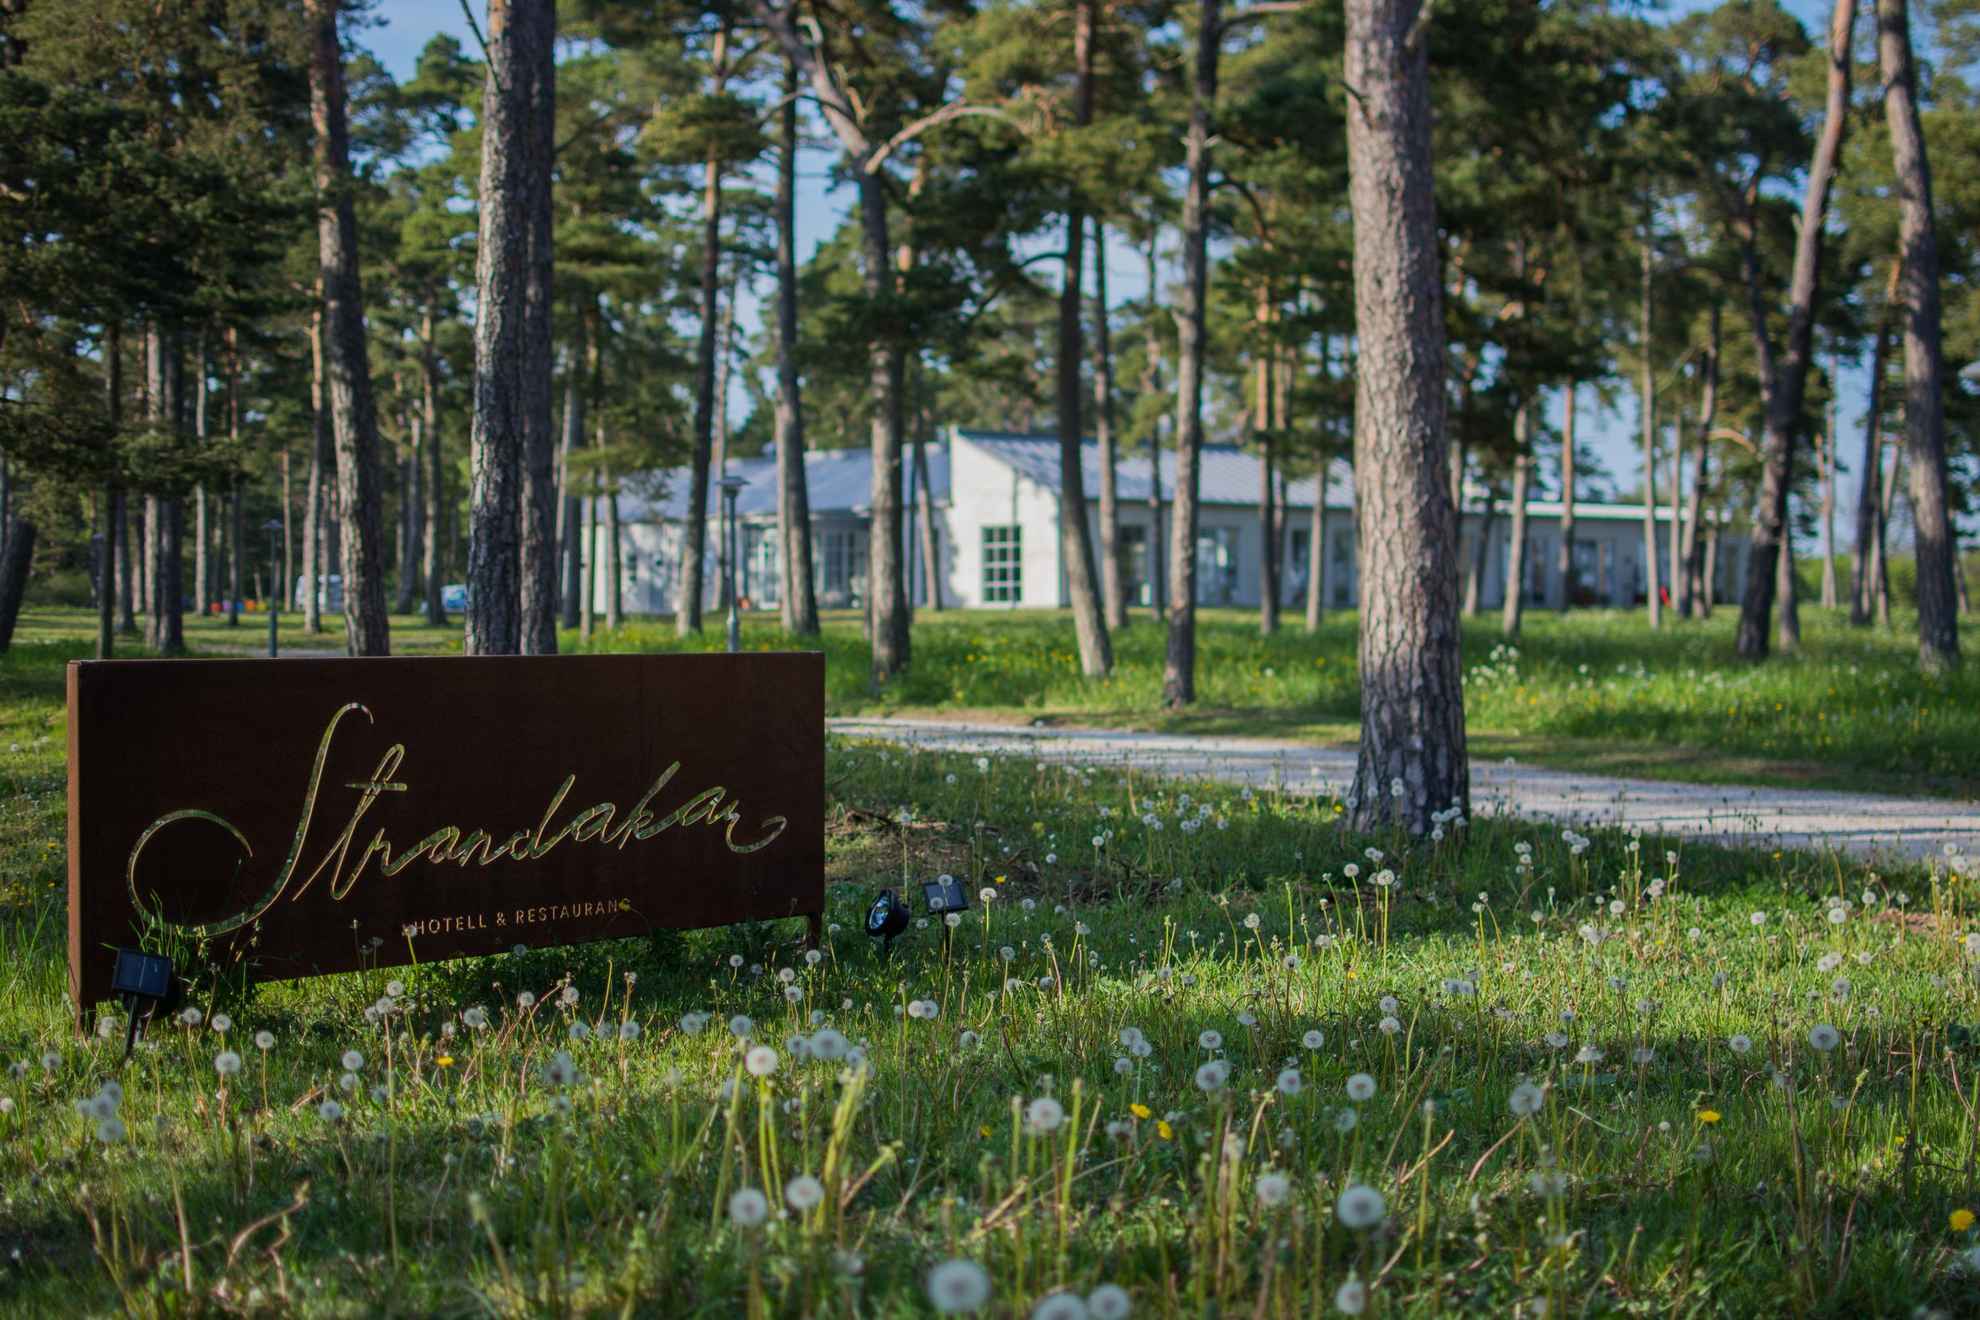 Un panneau indiquant l'hôtel et restaurant Strandakar se trouve planté dans le sol, parmi les pissenlits et les pins. Derrière les pins, en arrière-plan, il y a un grand bâtiment blanc.